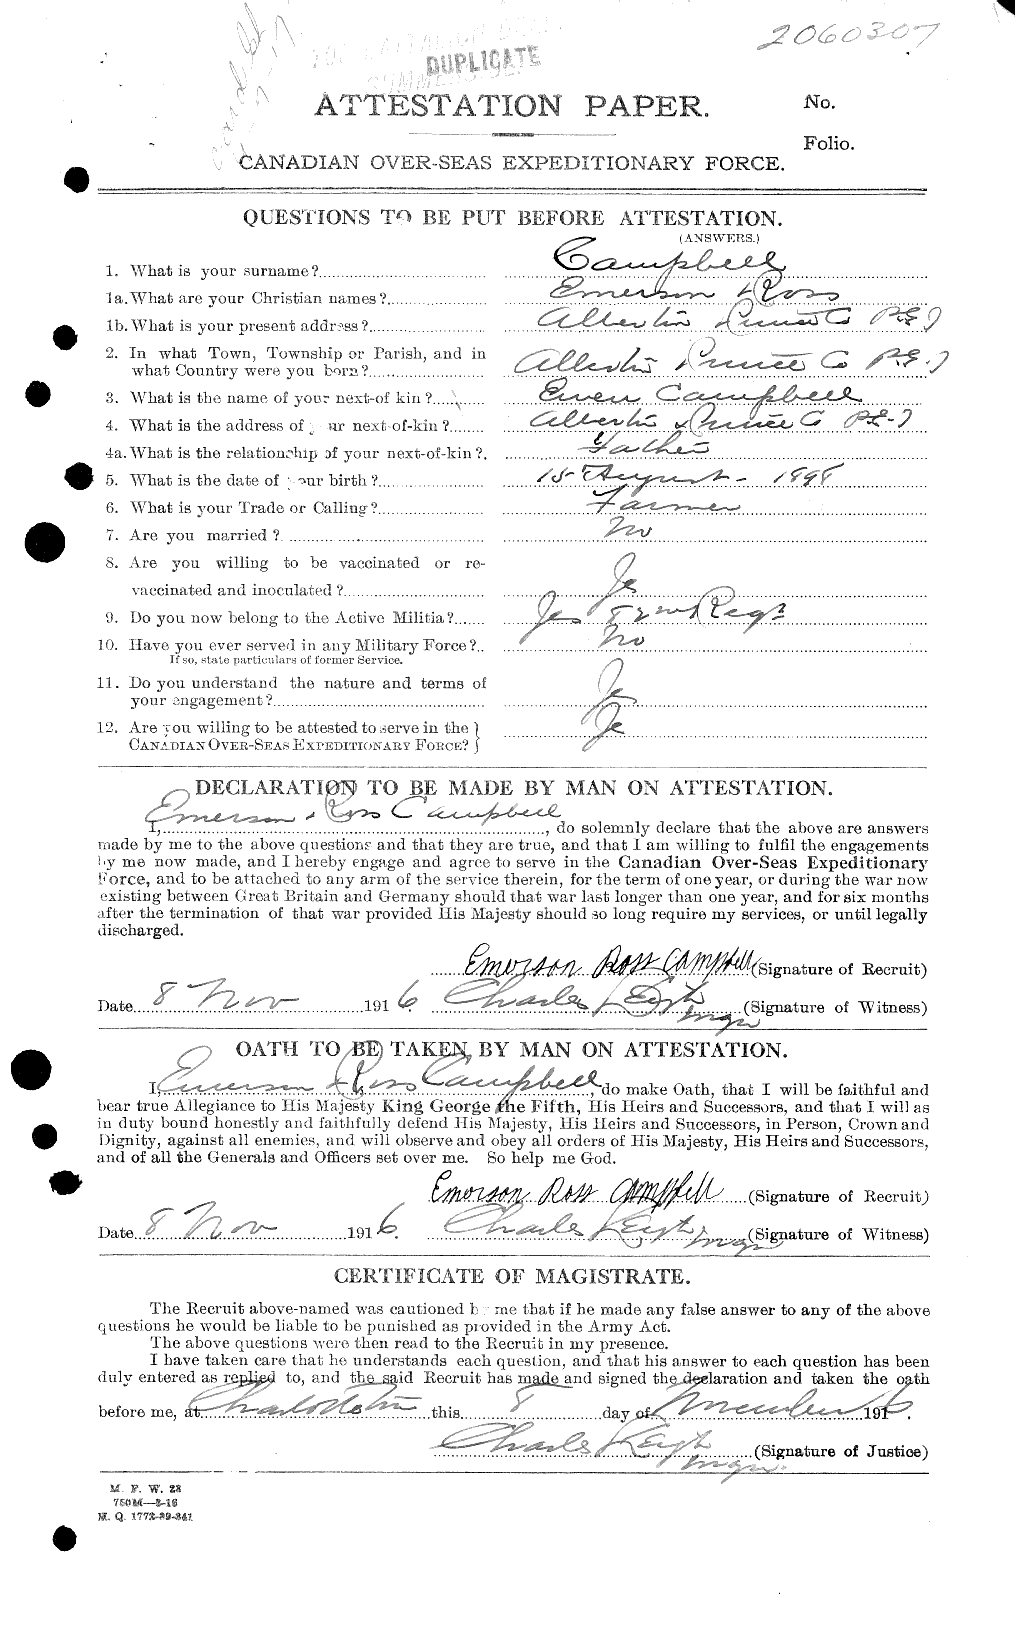 Dossiers du Personnel de la Première Guerre mondiale - CEC 003671a